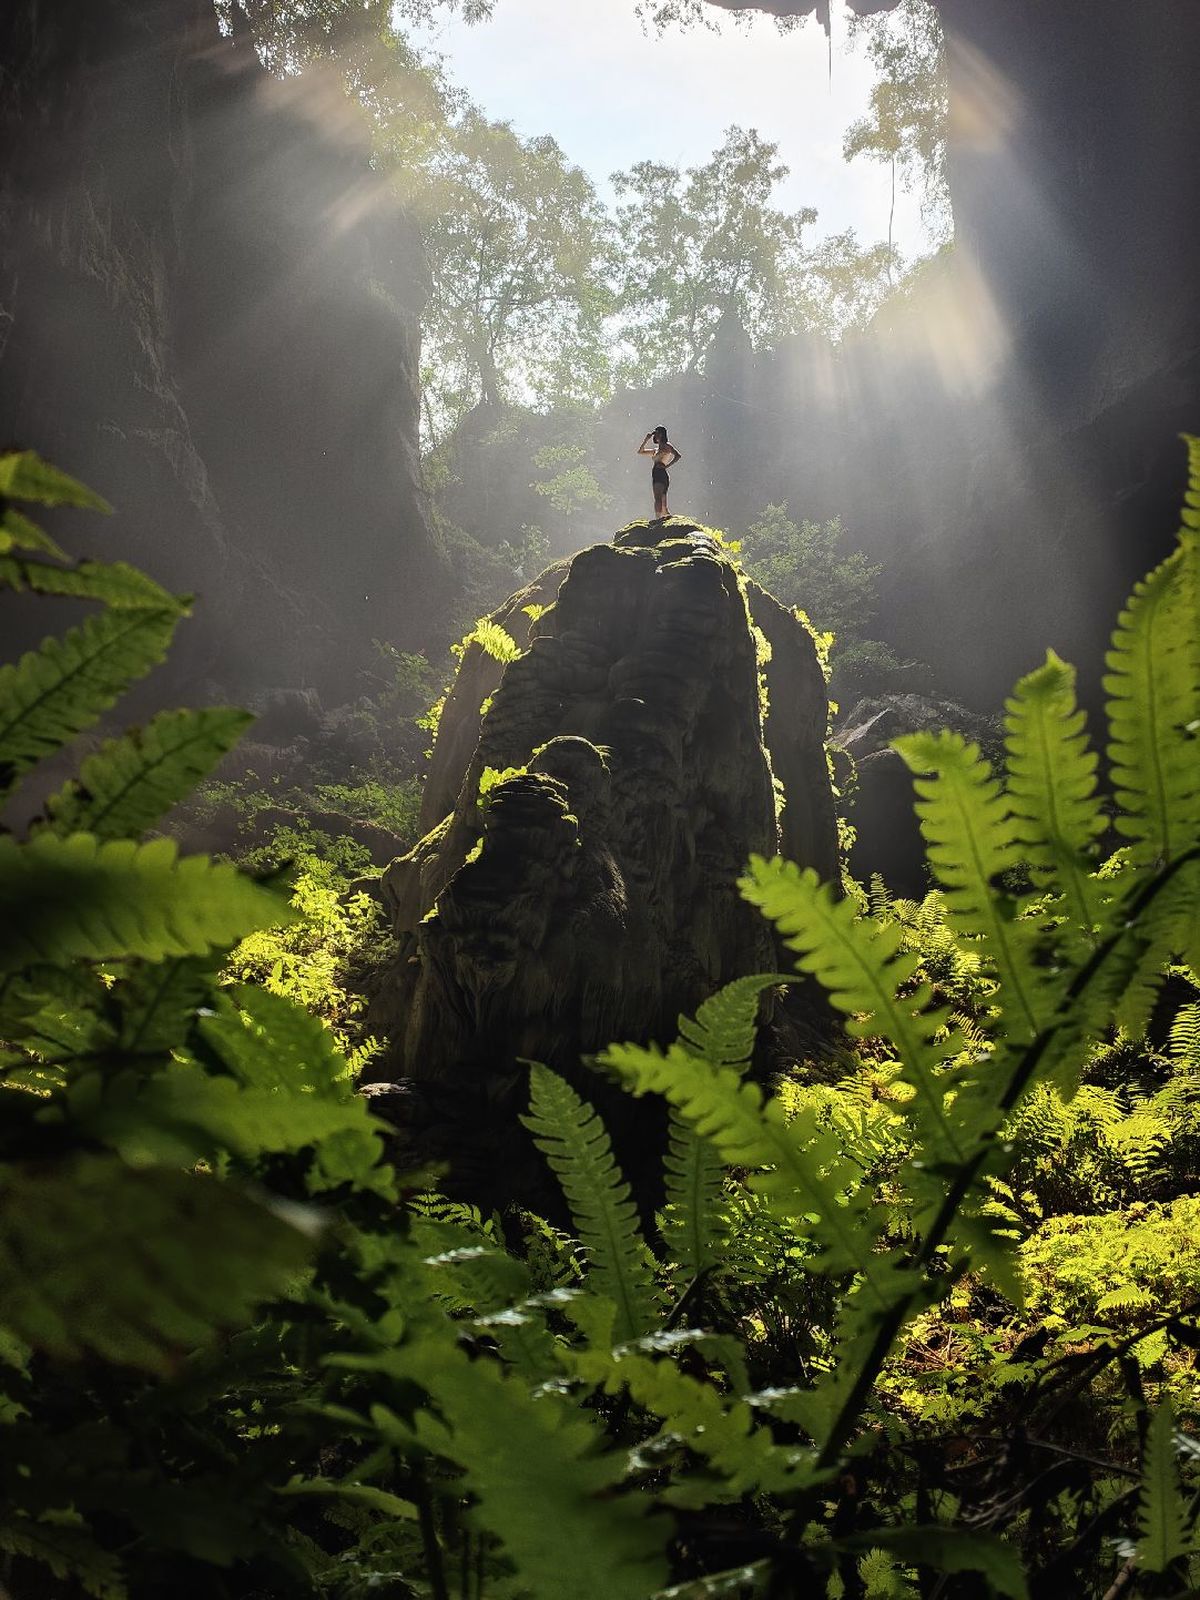 一个人站在丛林中的岩石上 阳光透过蕨类植物照射下来